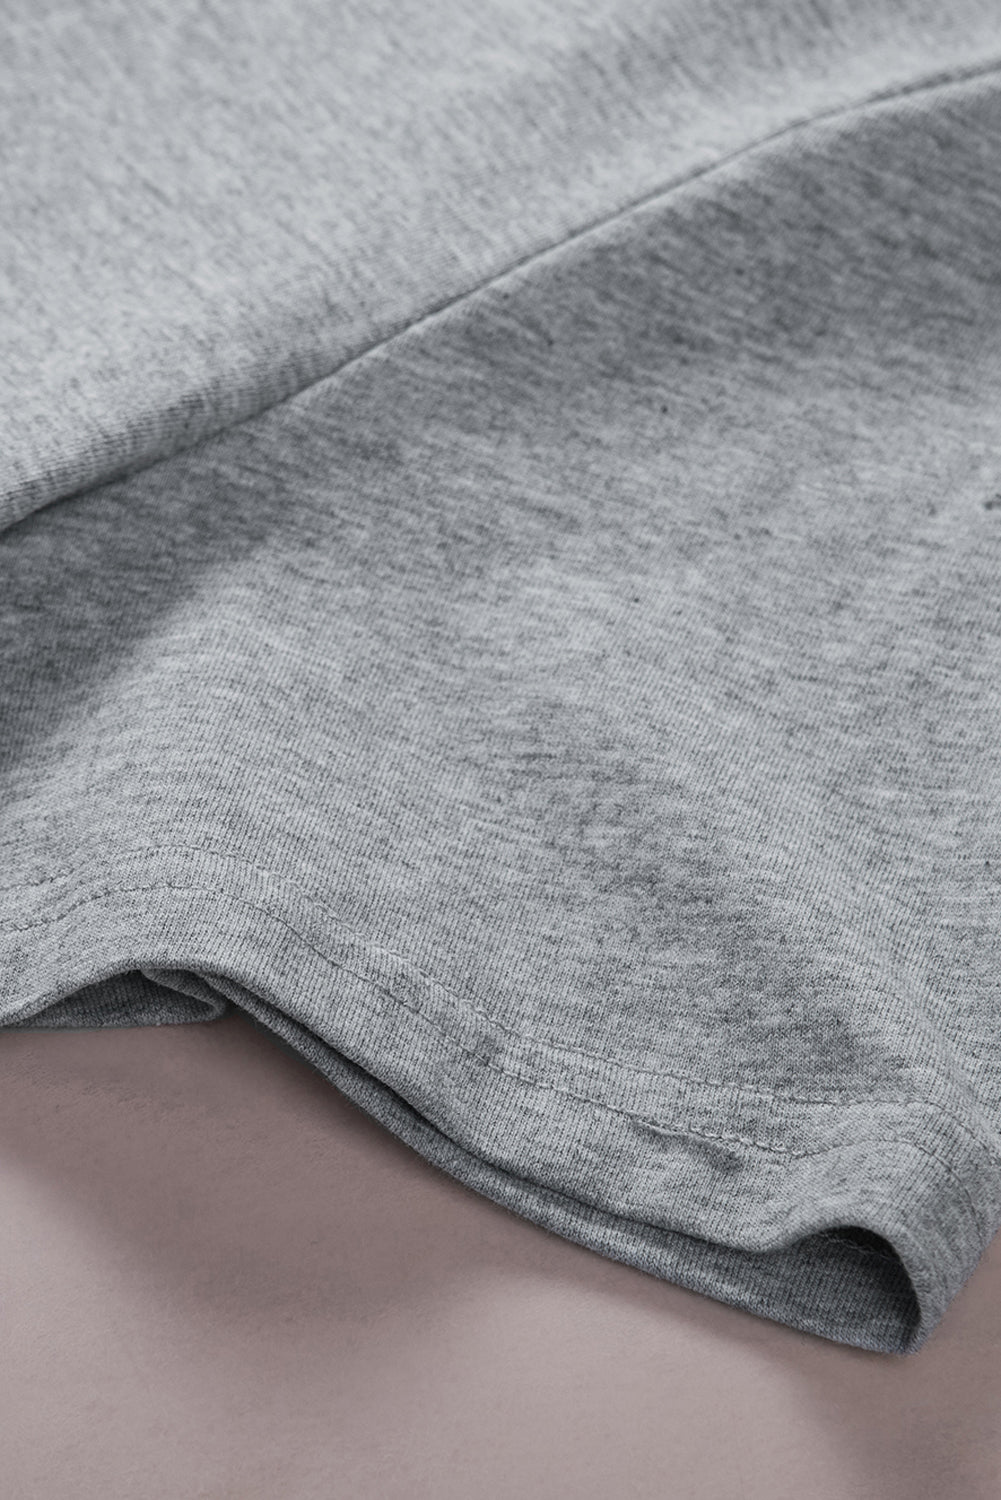 T-shirt gris déchiré à manches courtes de couleur unie